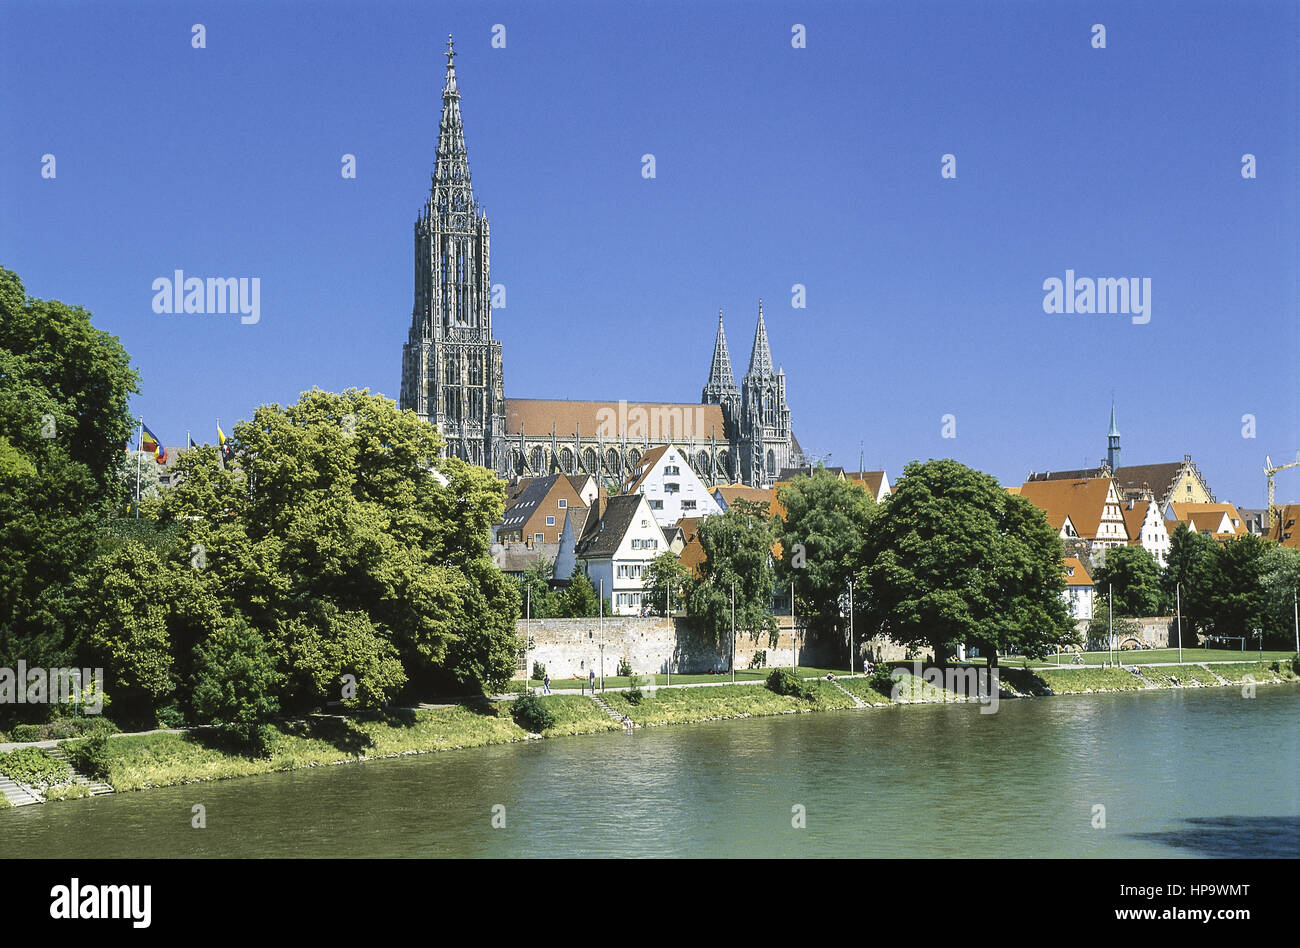 Ulm an der Donau, Muenster, Bade-Wurtemberg, Allemagne Banque D'Images